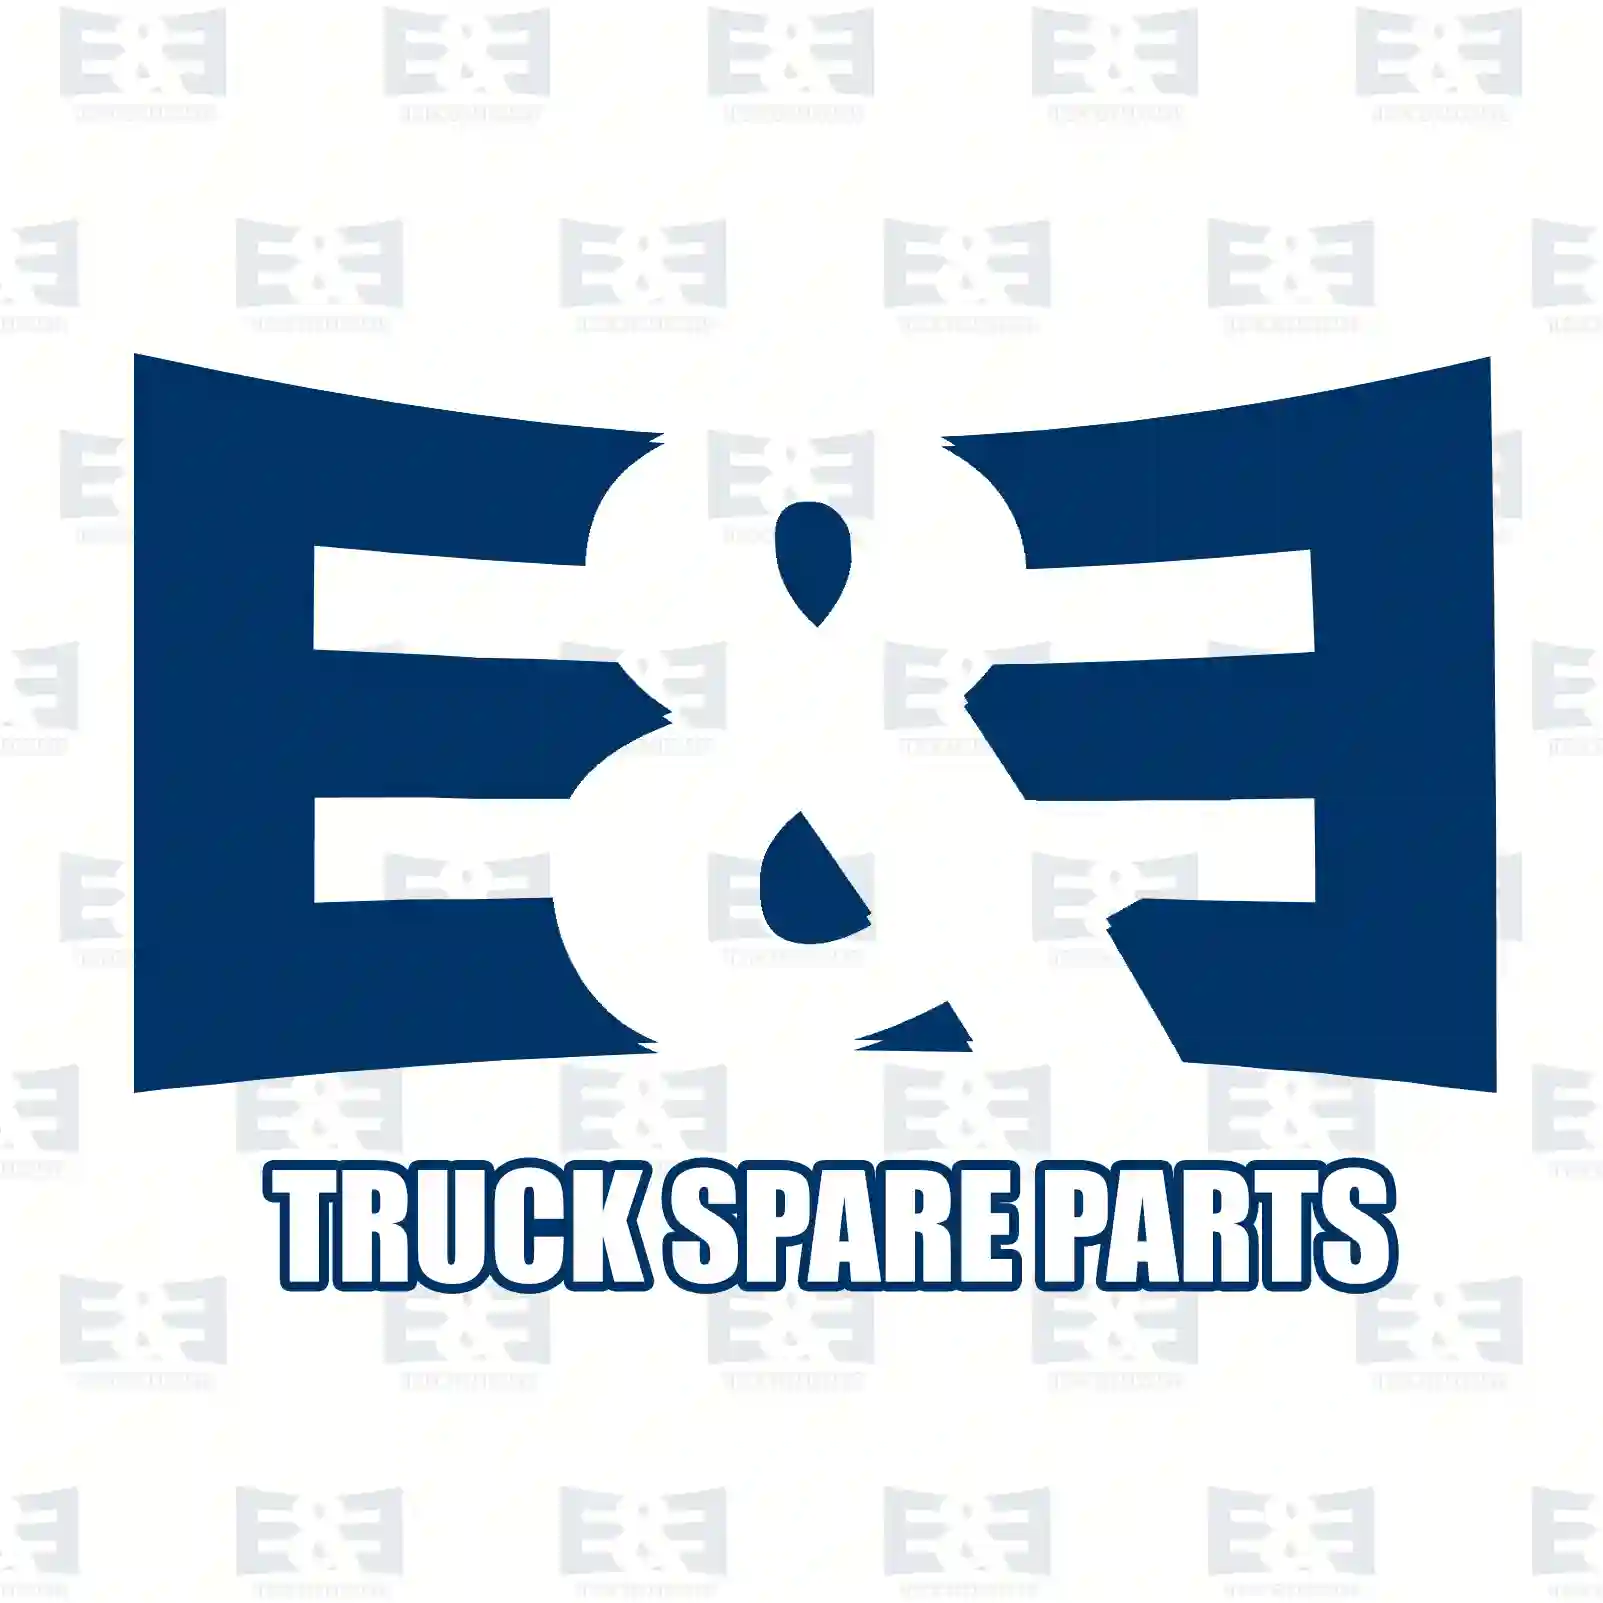 Level valve, 2E2283226, 3282425 ||  2E2283226 E&E Truck Spare Parts | Truck Spare Parts, Auotomotive Spare Parts Level valve, 2E2283226, 3282425 ||  2E2283226 E&E Truck Spare Parts | Truck Spare Parts, Auotomotive Spare Parts